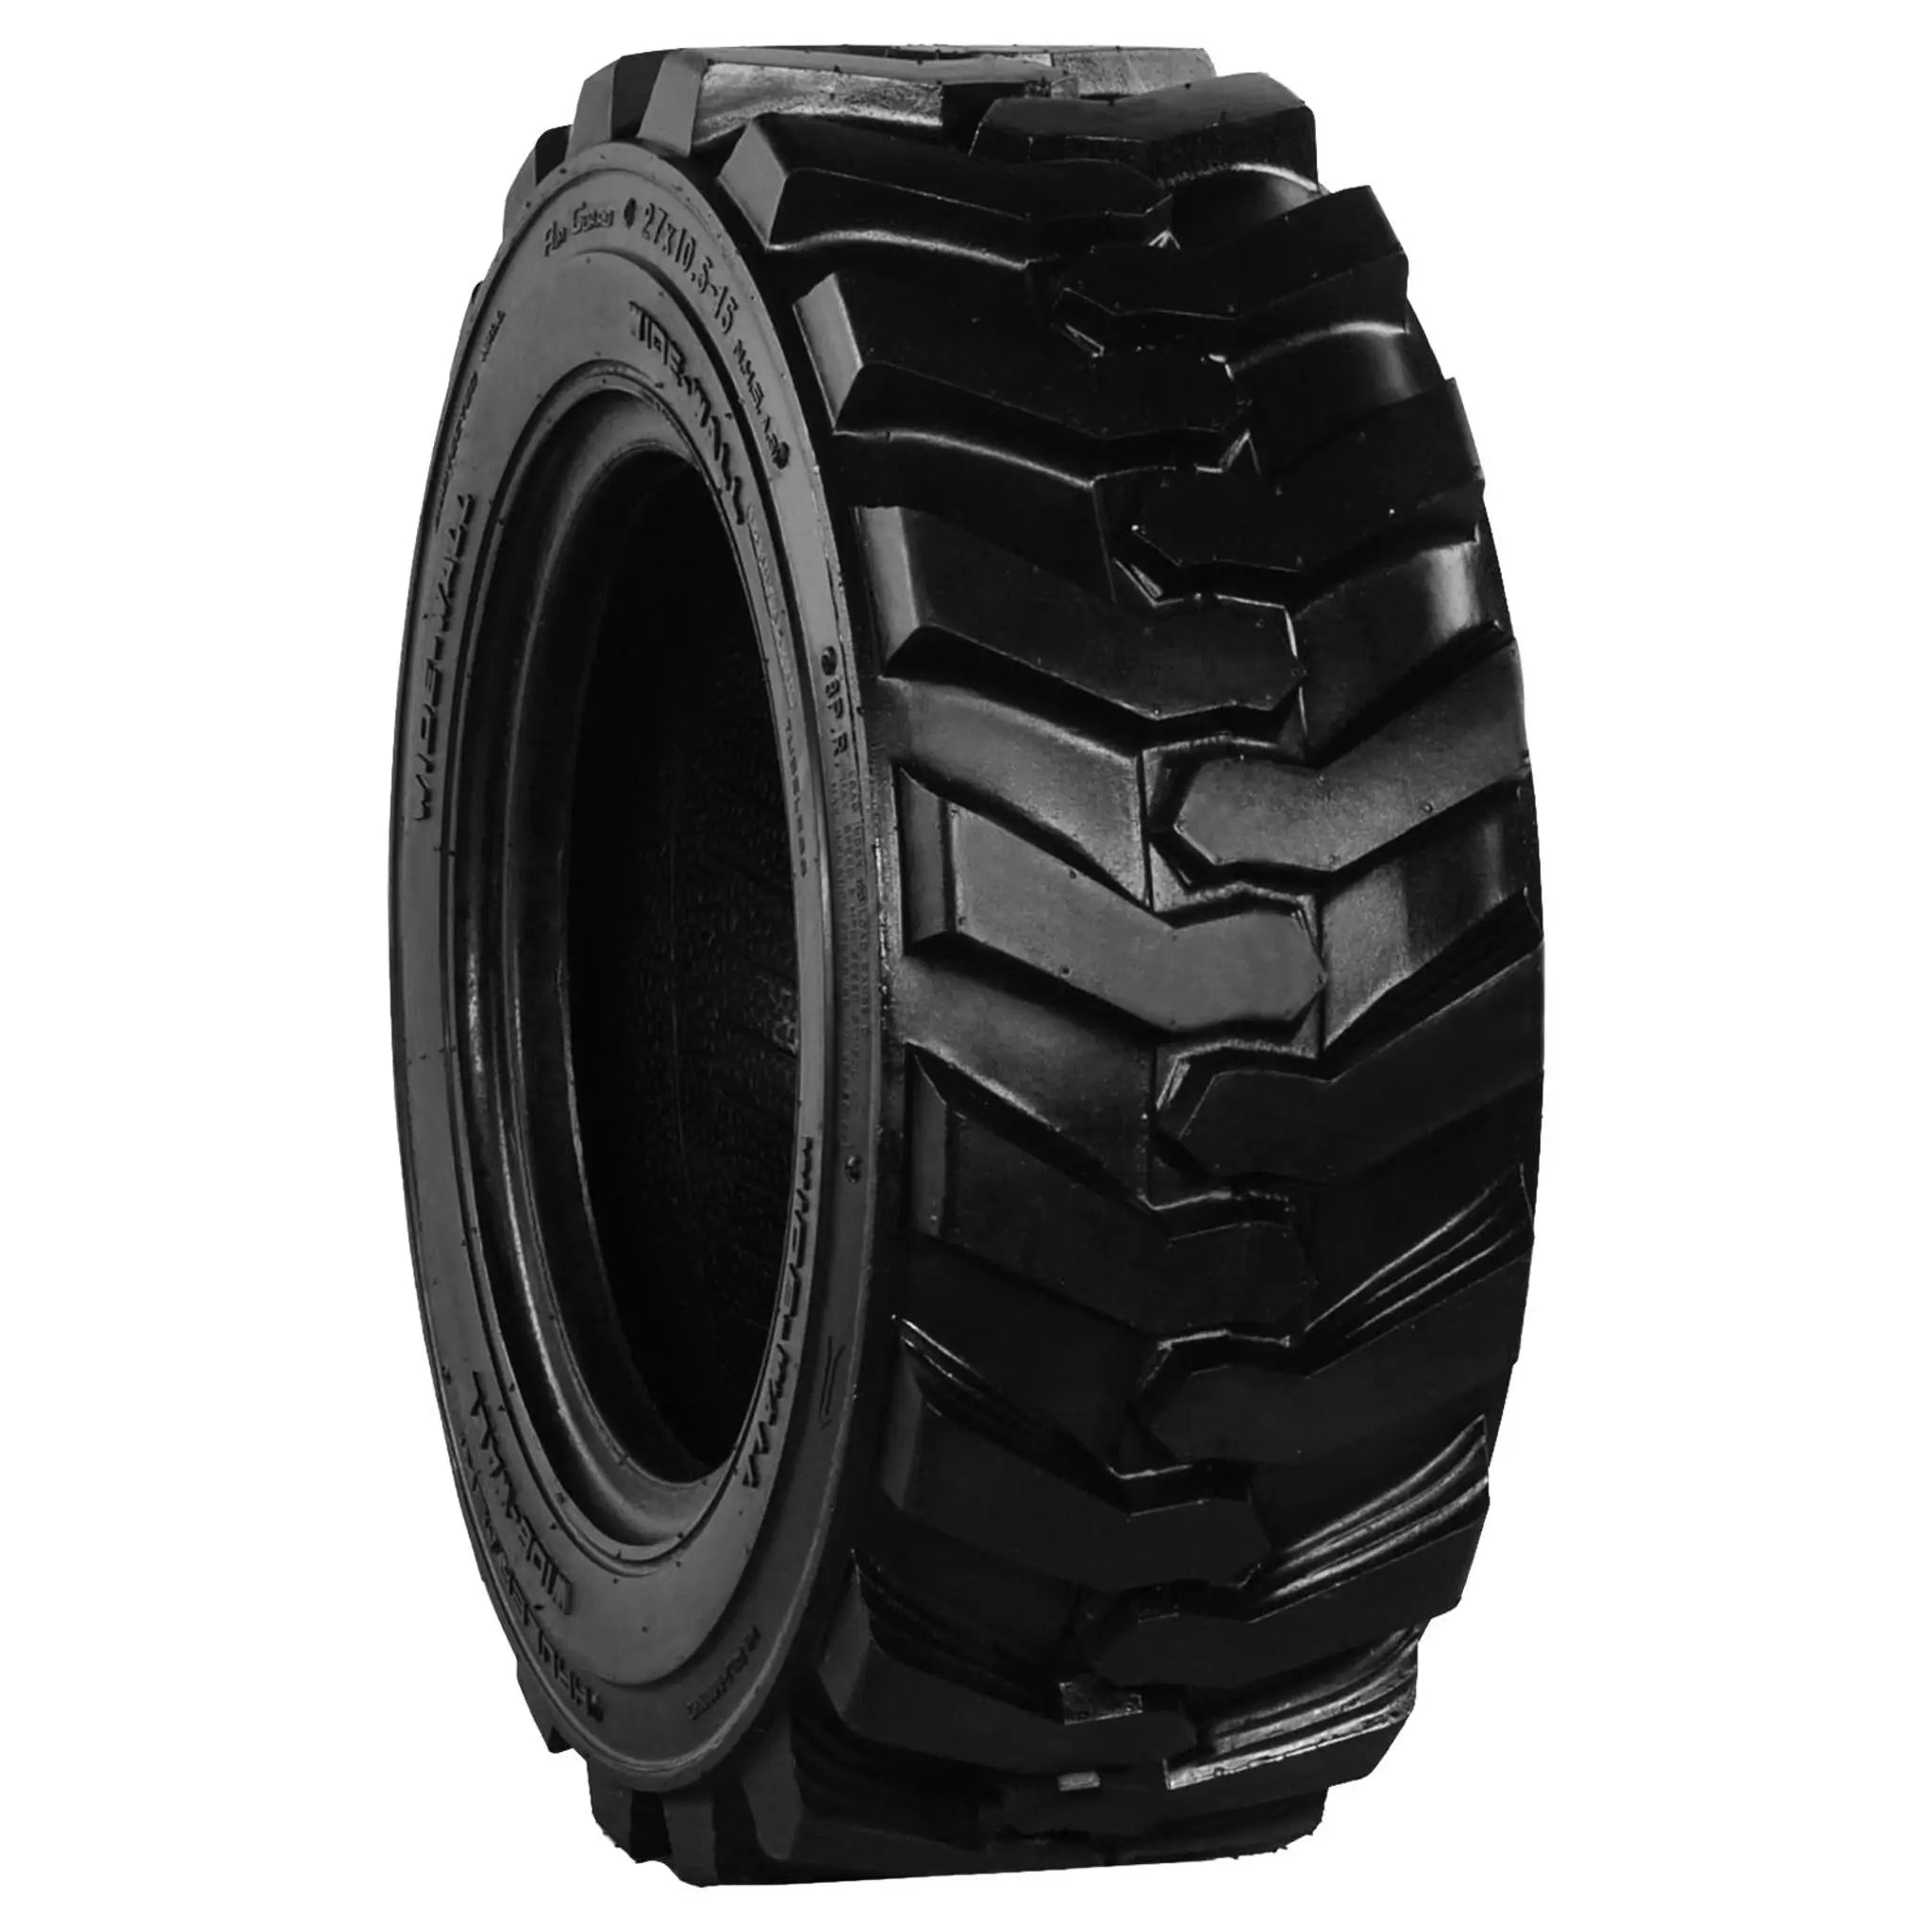 27X10.50-15 Skid Steer Tires